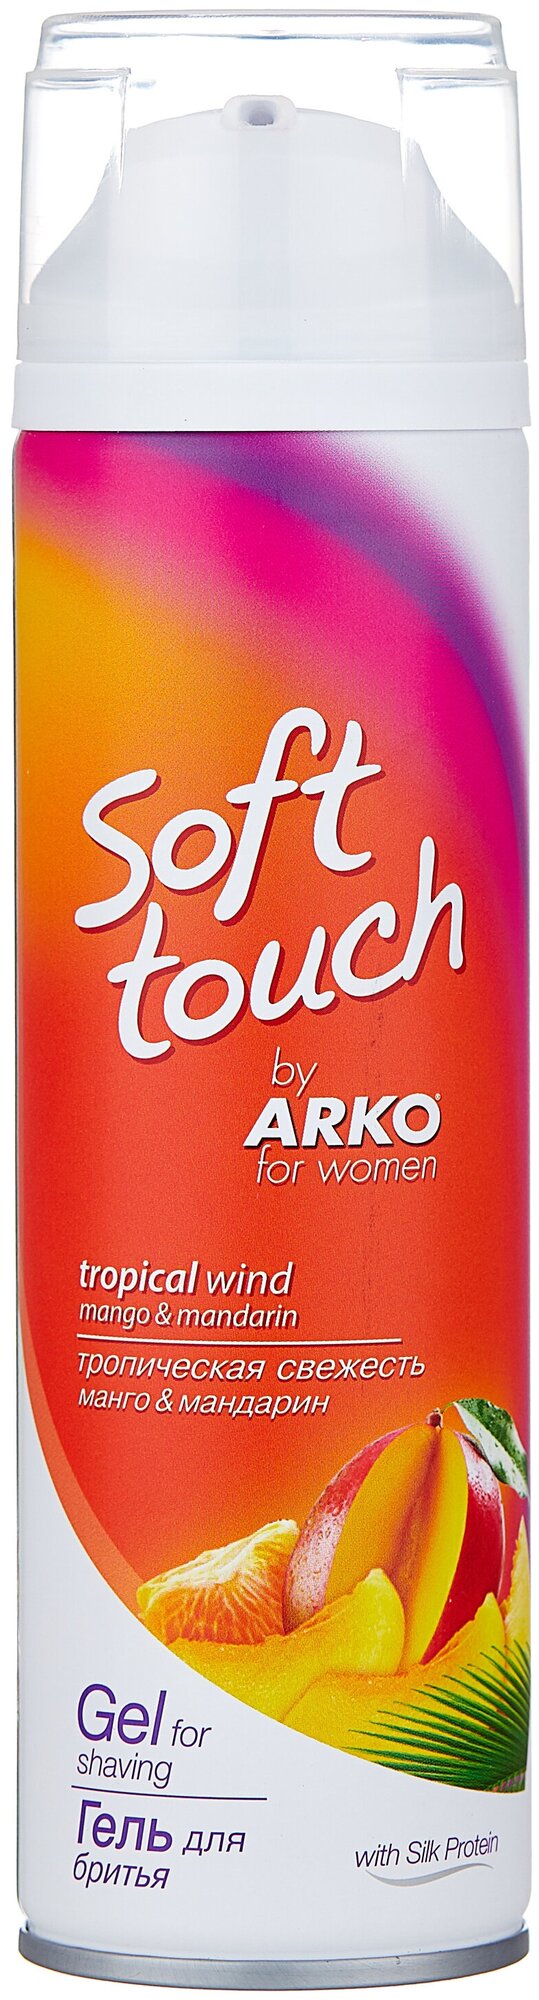 Arko Гель для бритья Soft touch Тропическая свежесть